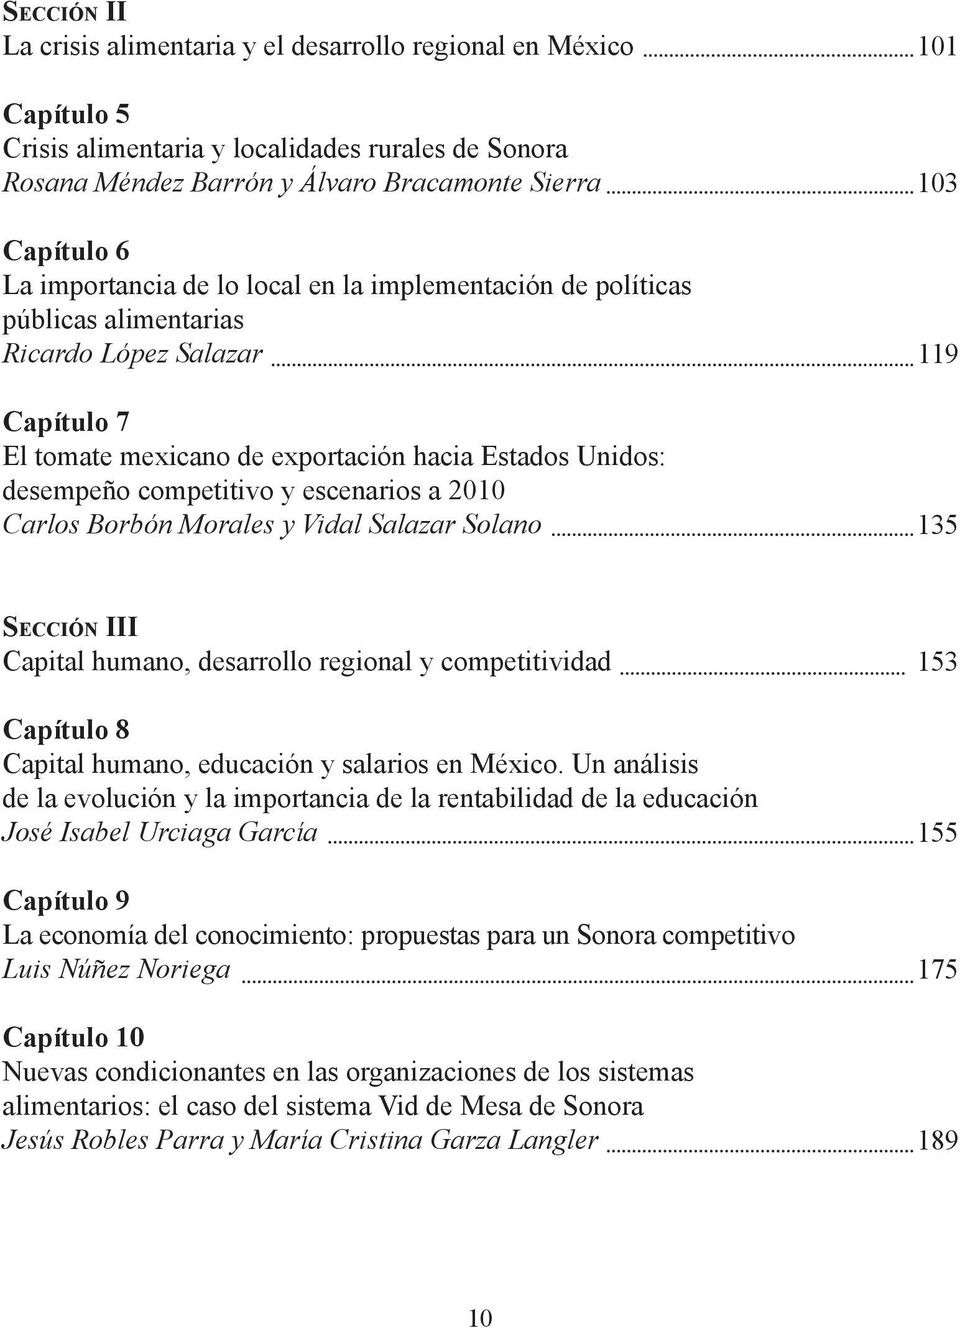 escenarios a 2010 Carlos Borbón Morales y Vidal Salazar Solano 101 103 119 135 Sección III Capital humano, desarrollo regional y competitividad Capítulo 8 Capital humano, educación y salarios en